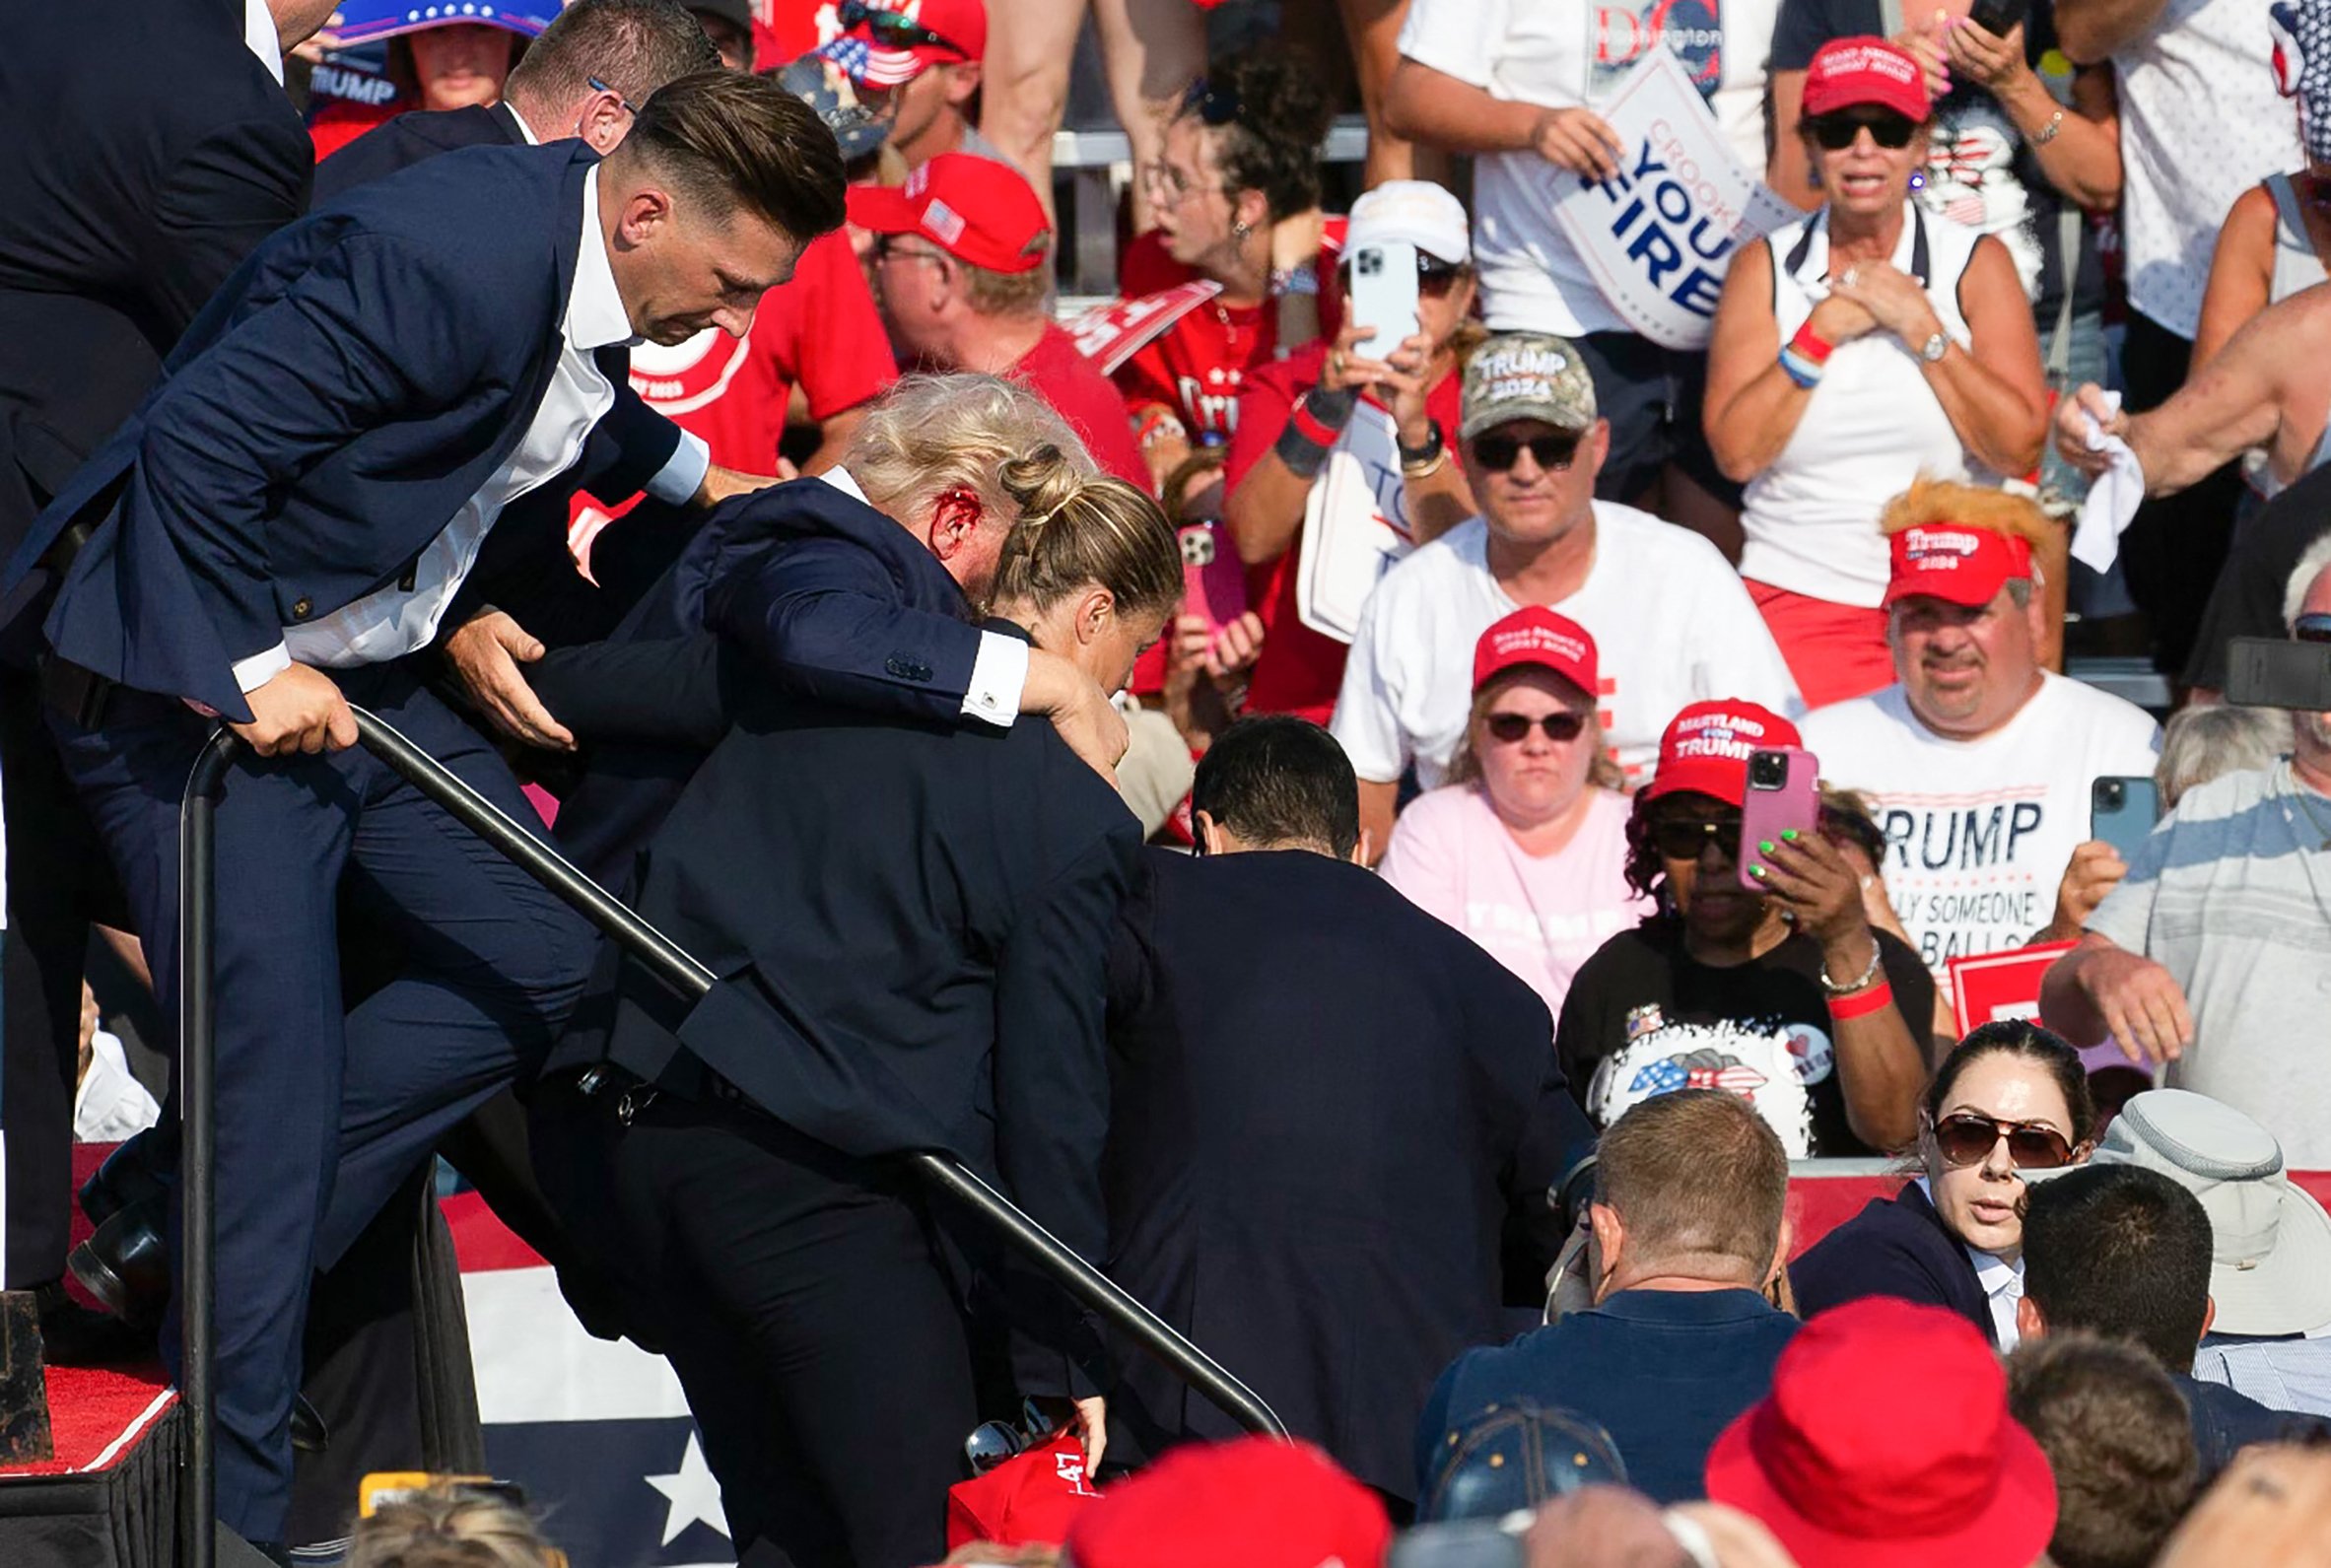 O candidato republicano Donald Trump é visto com sangue no rosto, cercado por agentes do Serviço Secreto, enquanto é retirado do palco em um evento de campanha na Butler Farm Show Inc., em Butler, Pensilvânia, em 13 de julho de 2024